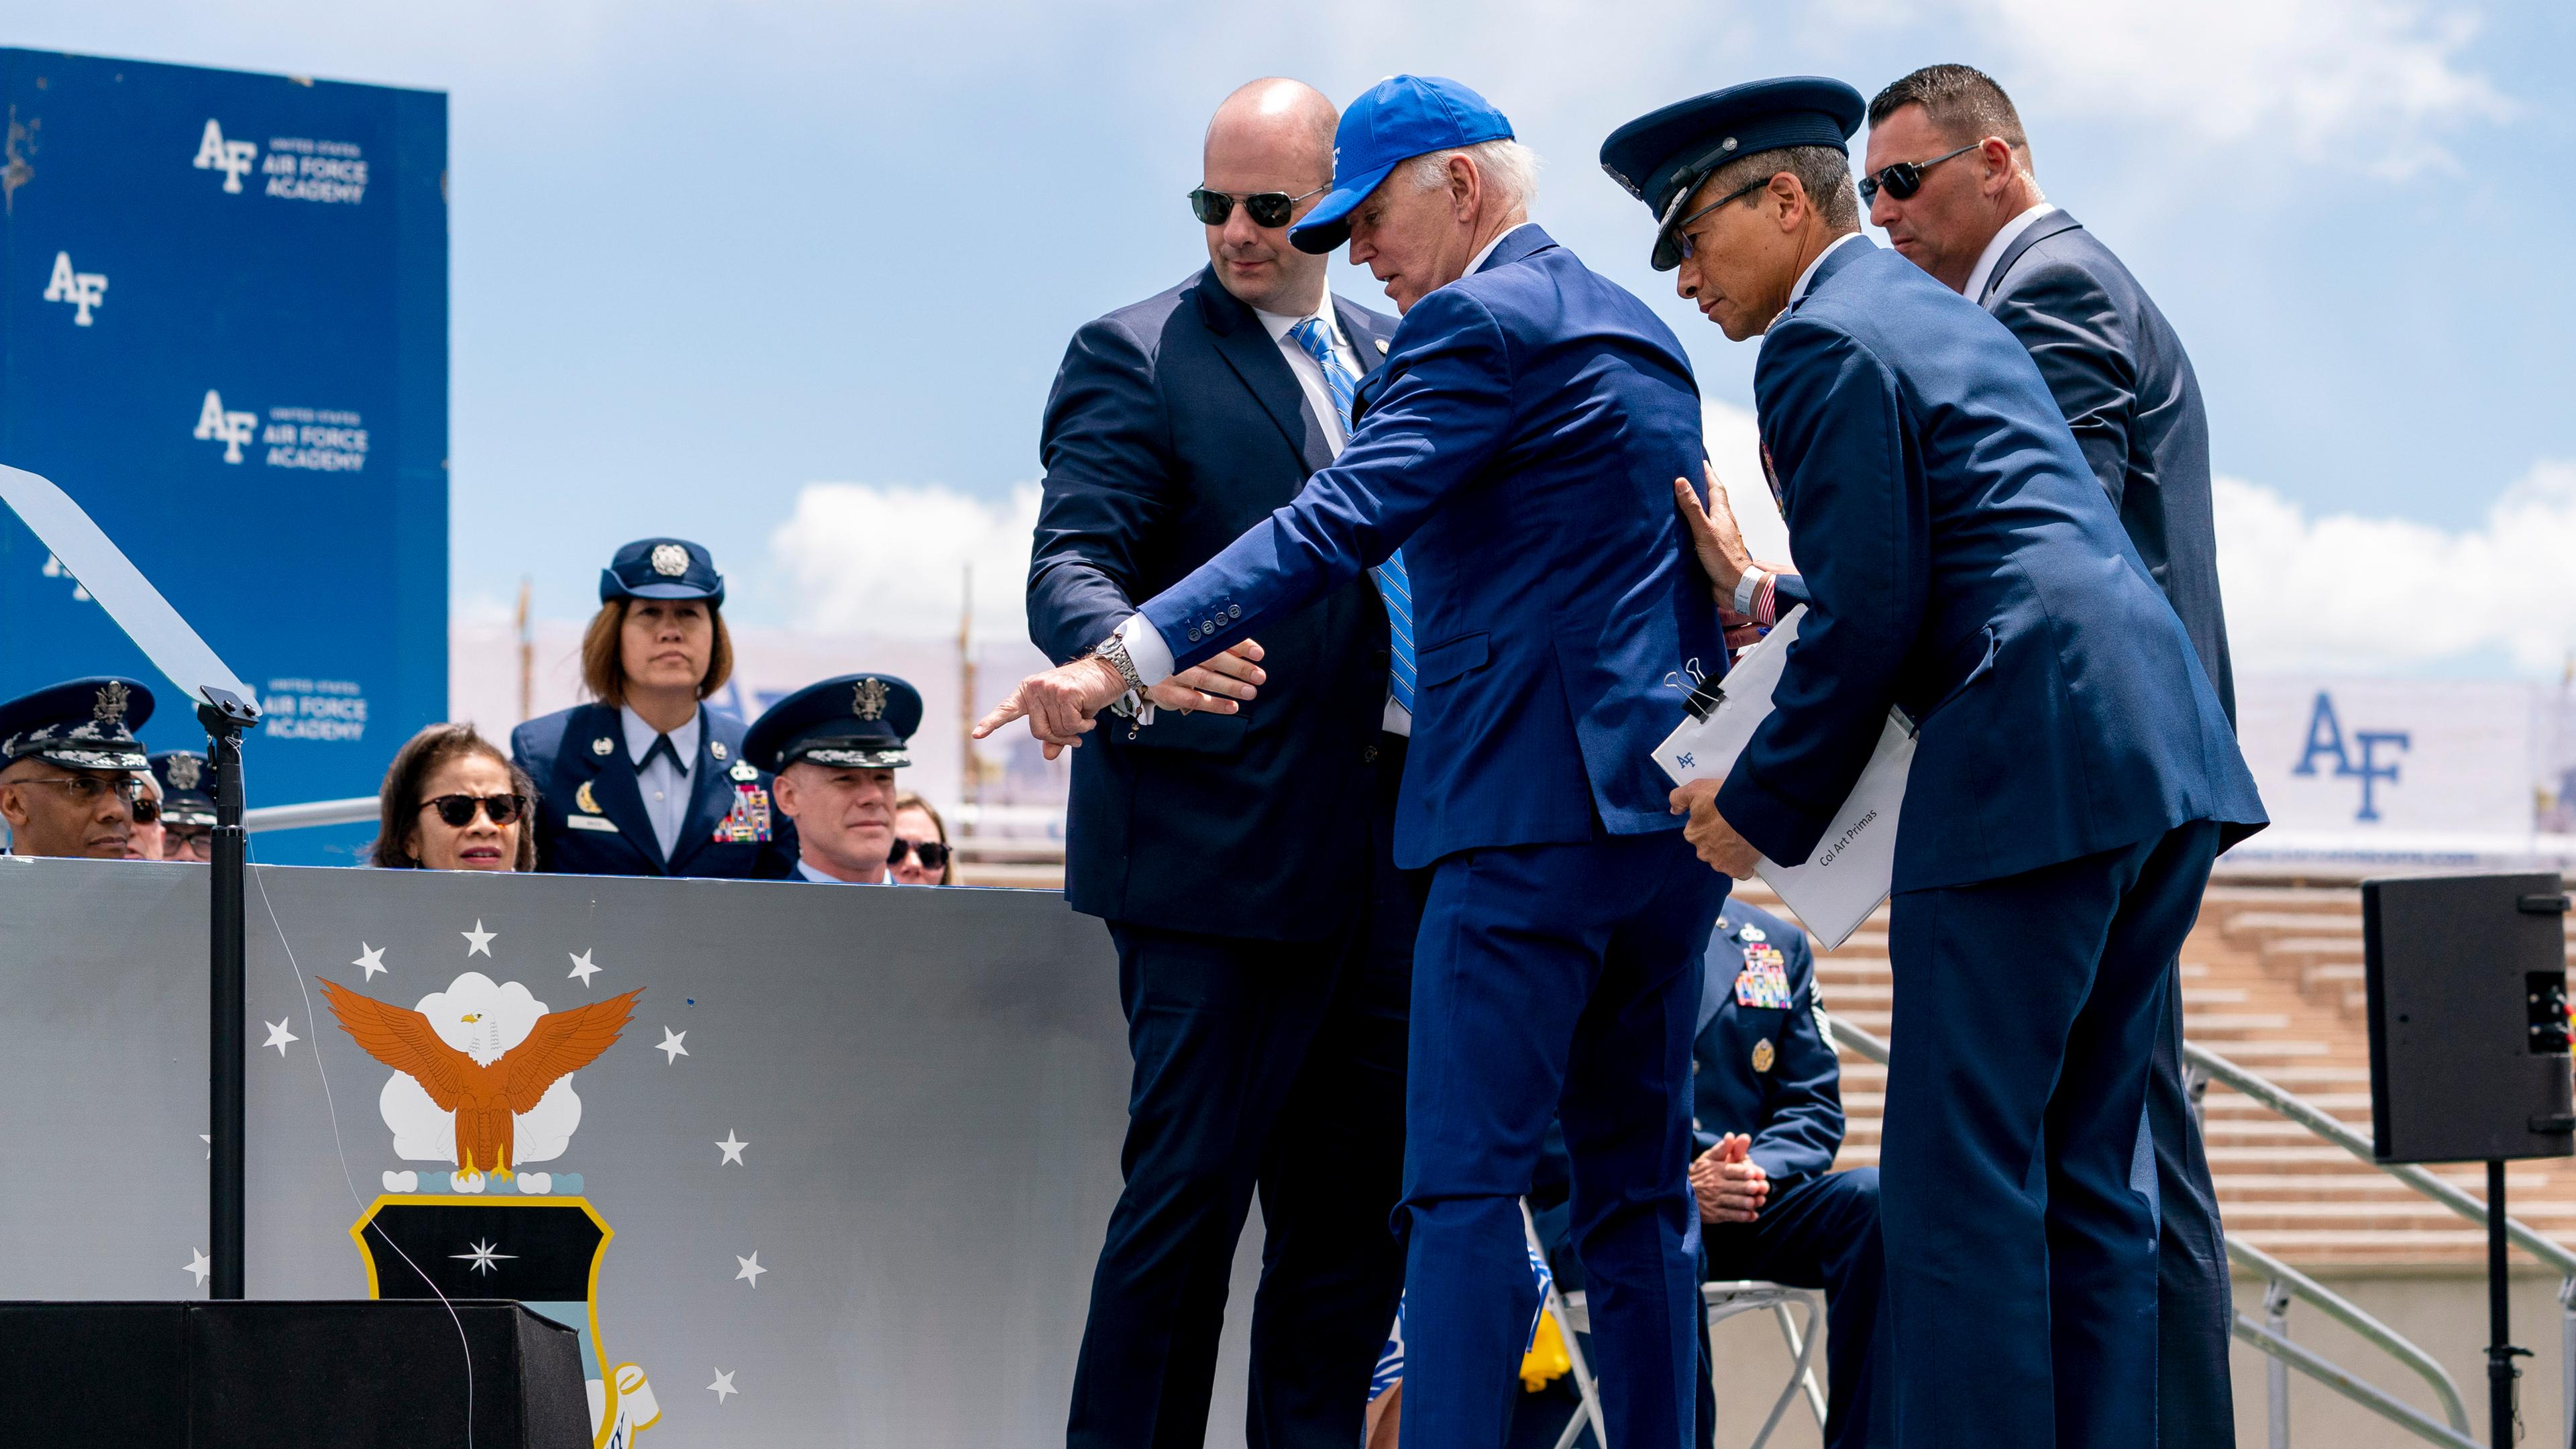 US-Präsident Biden zeigt nach seinem Sturz bei einer Absolventenfeier der Air Force Academy auf den Sandsack, über den er gestolpert ist